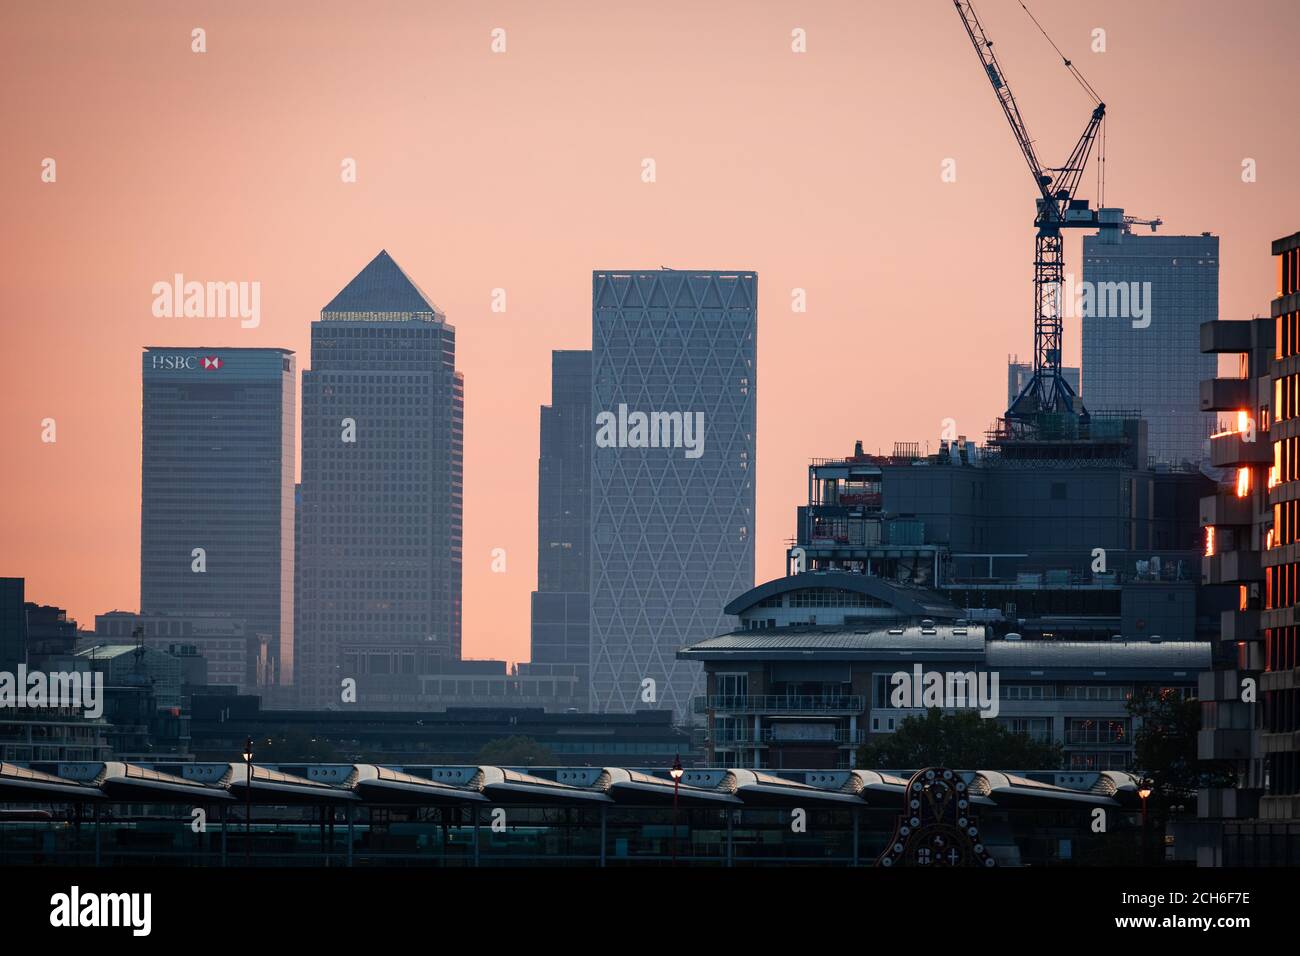 Am frühen Morgen leuchtet das Licht in den Wolkenkratzern von Canary Wharf im Osten Londons, zu Beginn einer Woche, in der Großbritannien voraussichtlich bei Temperaturen von mehr als 30 Grad Celsius fabbern wird. Stockfoto